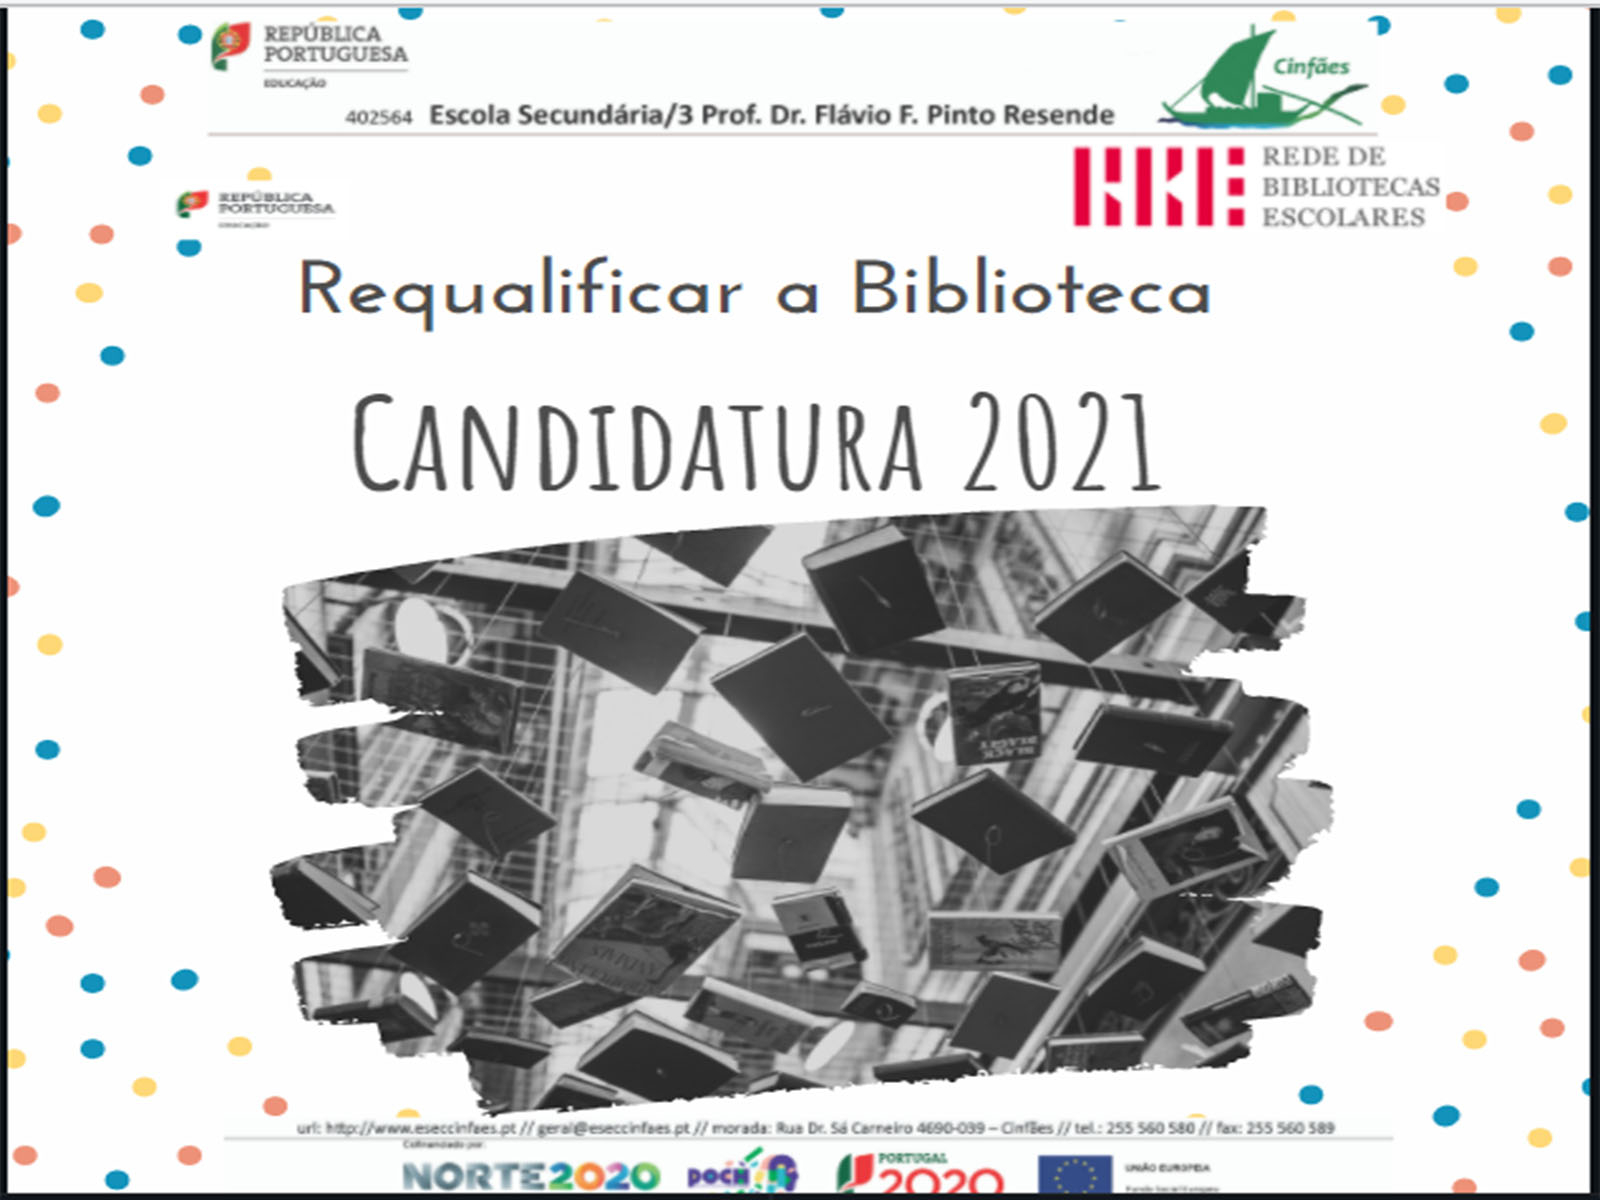 Aprovado o projeto “Requalificar a biblioteca” - Candidatura 2021